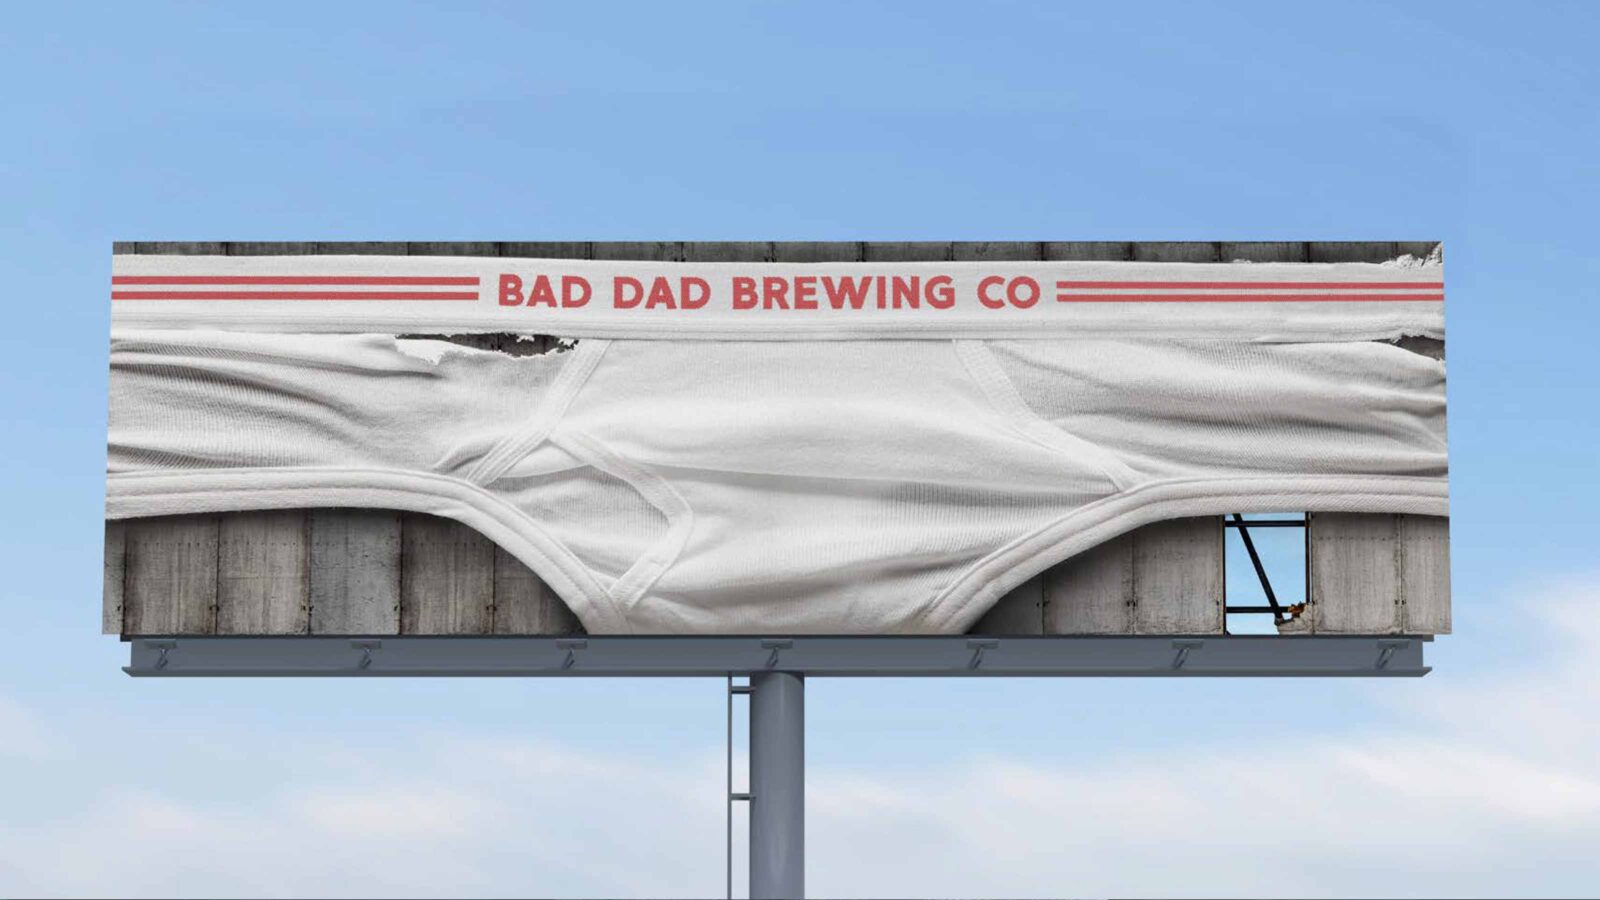 Bad Dad Brewing Co